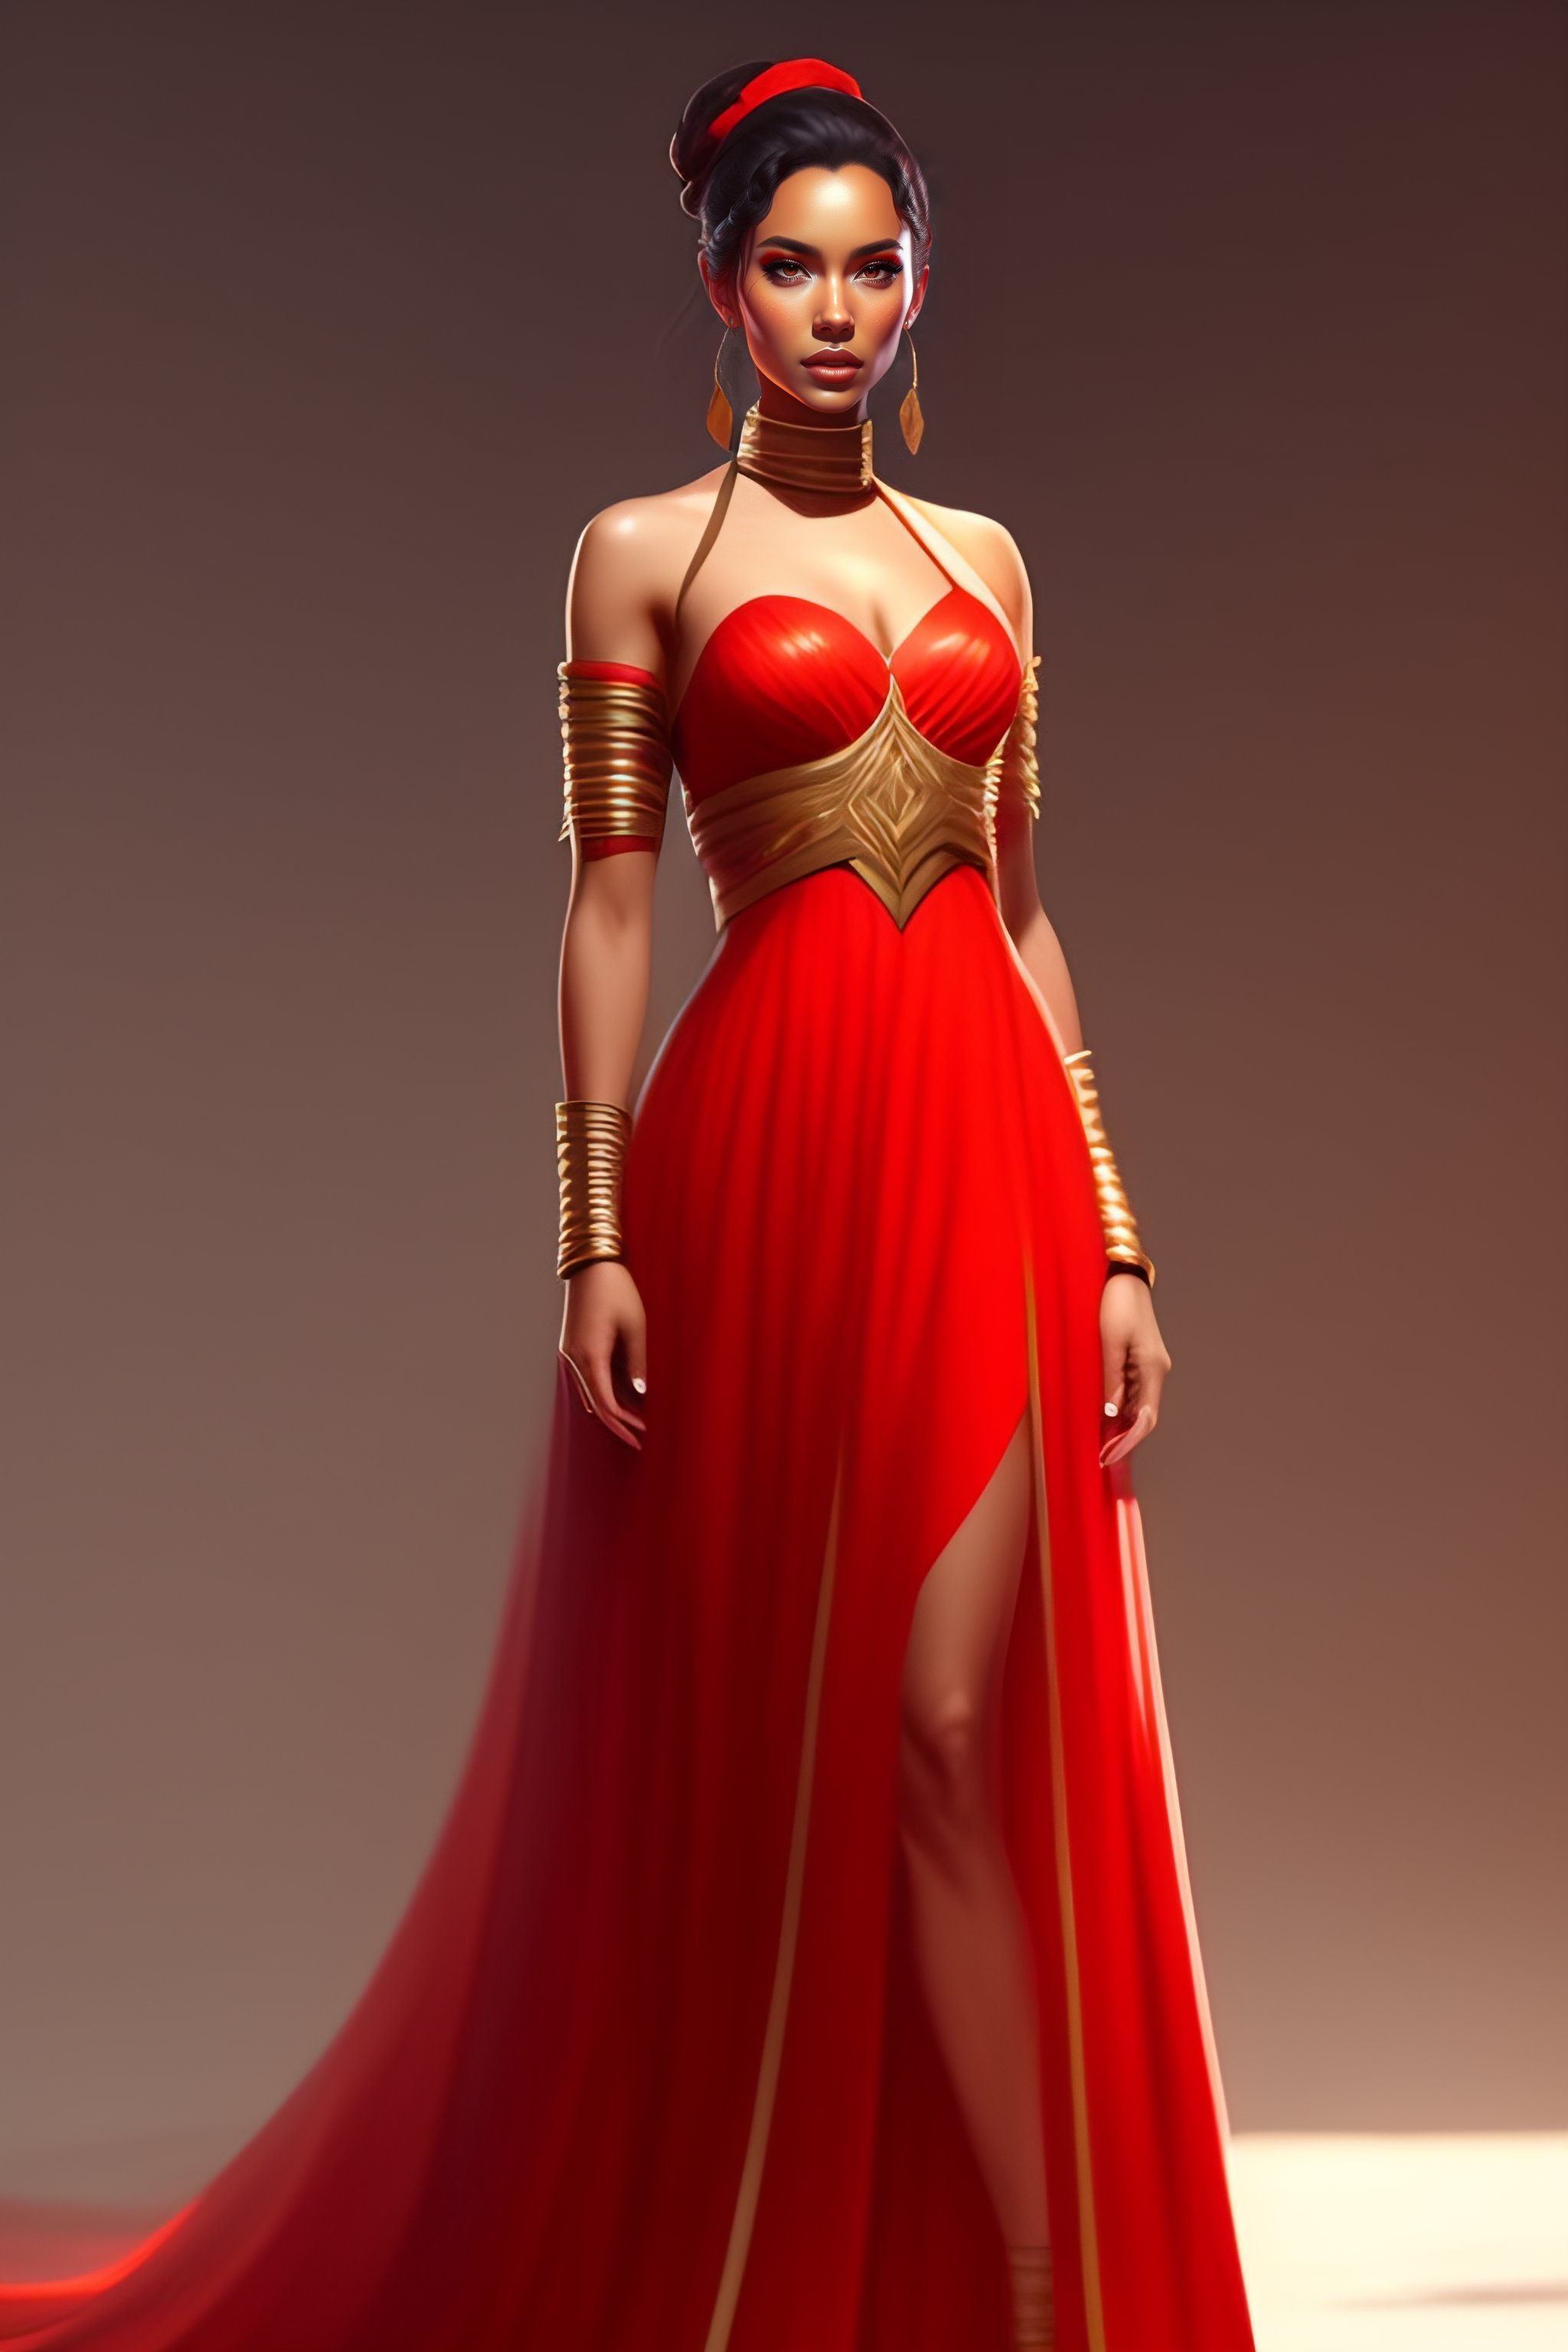 Lexica Full Body Girl Concept Art Character Design Trending On Artstation Rey Tracing